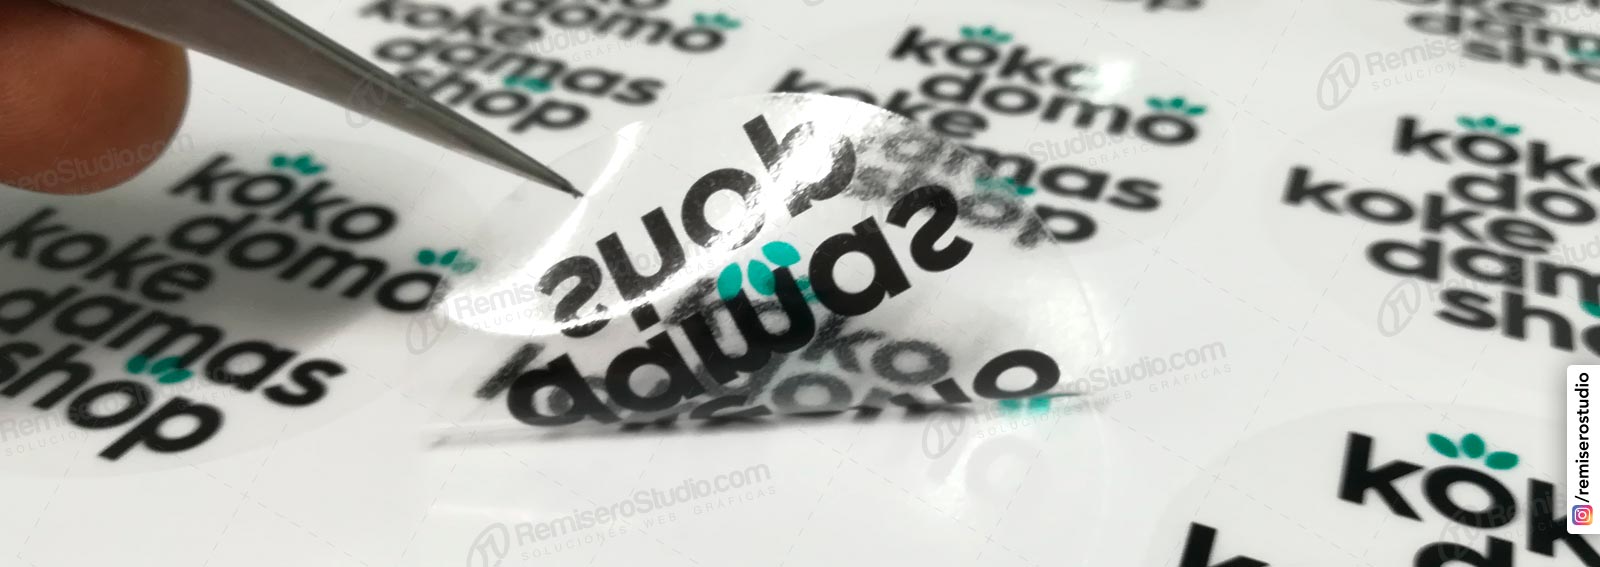 Él espalda civilización Etiquetas Adhesivas: Impresión de stickers adhesivos en Lima Perú |  Imprenta Online | RemiseroStudio.com